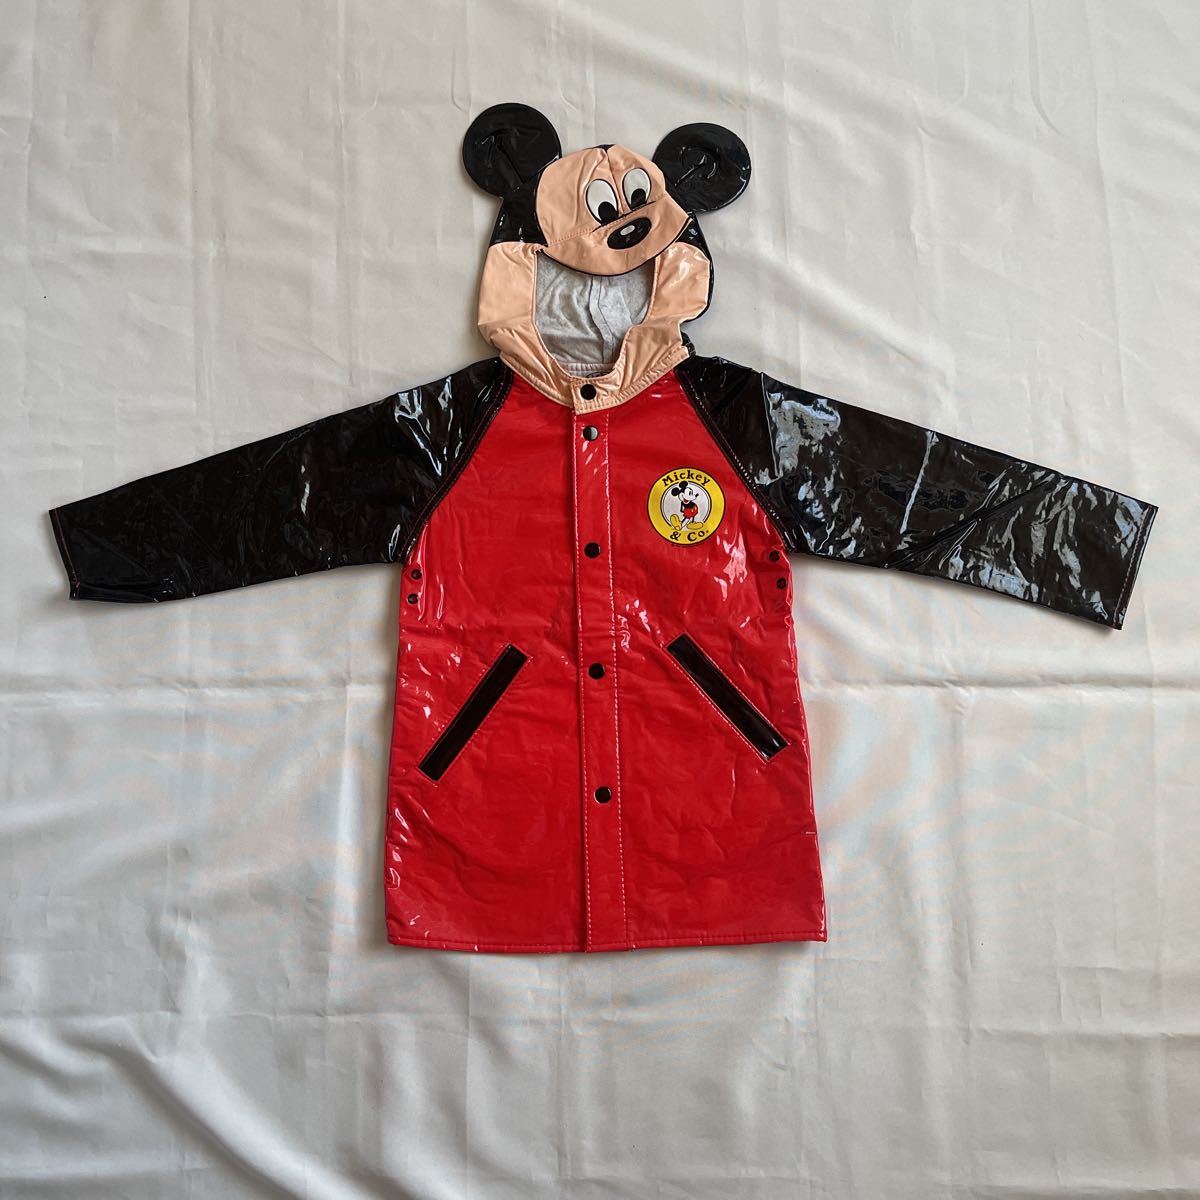 2175 Disney ミッキーマウス レインコート 高級素材使用ブランド ミッキーマウス